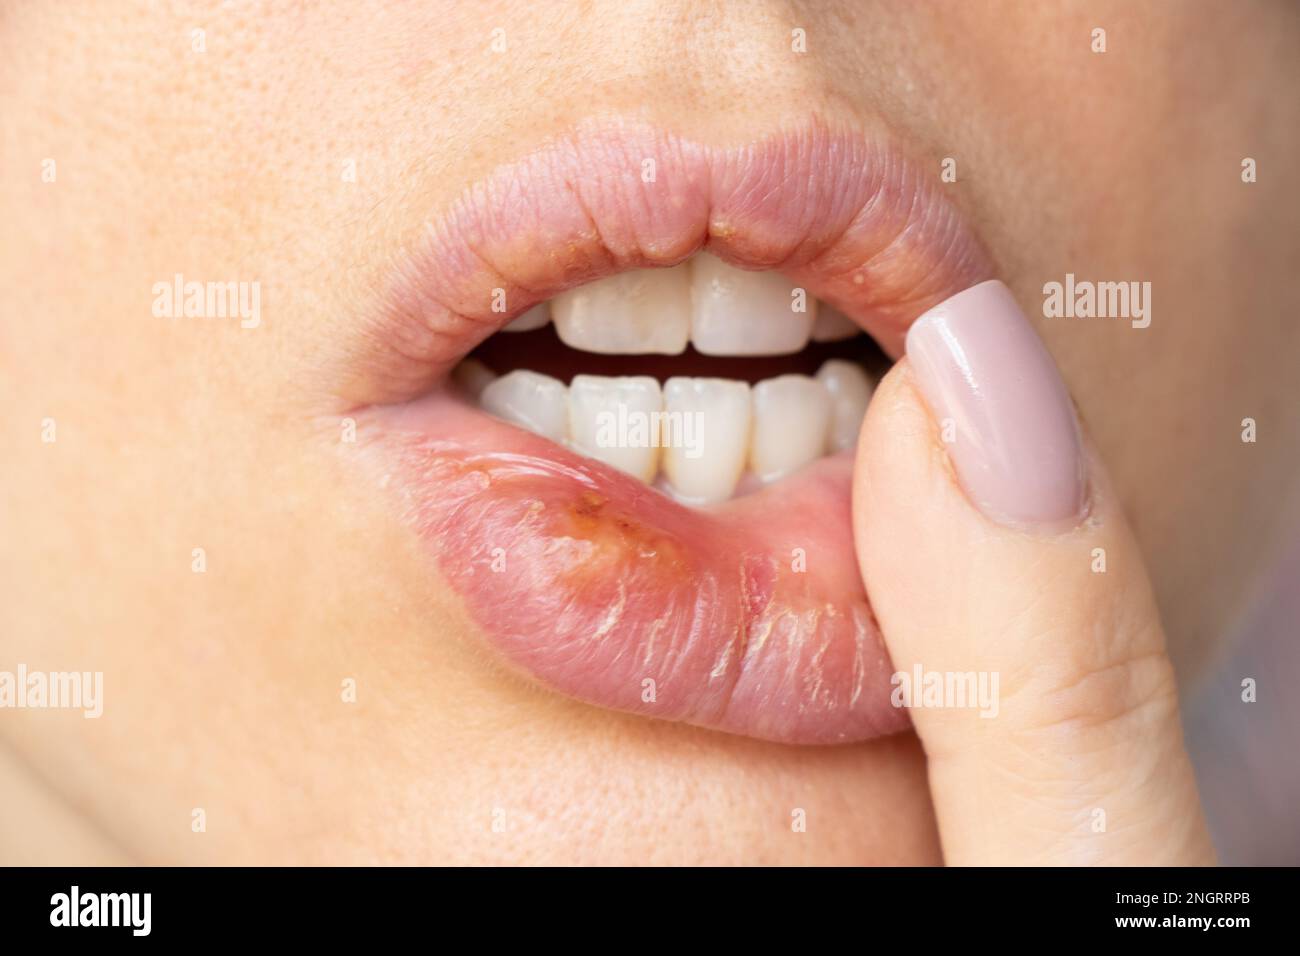 Herpes simplex sulle labbra di una ragazza primo piano, un gruppo di malattie virali con una eruzione caratteristica di vescicole raggruppate sul labbro Foto Stock